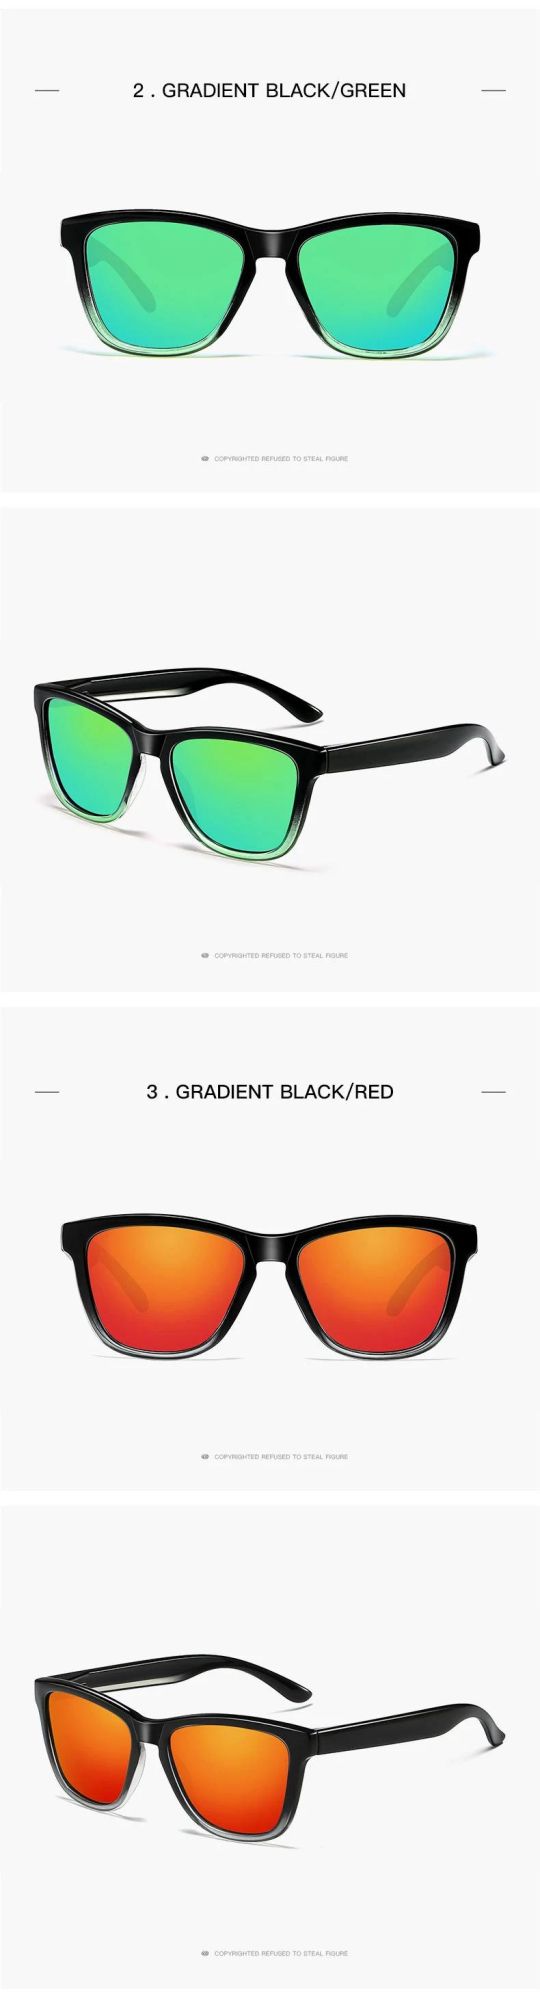 Free Sample Oculos De Sol Mais Vendidos Do Brasil OEM Unisex Custom Logo UV400 Tac Polarized Sunglasses for Men